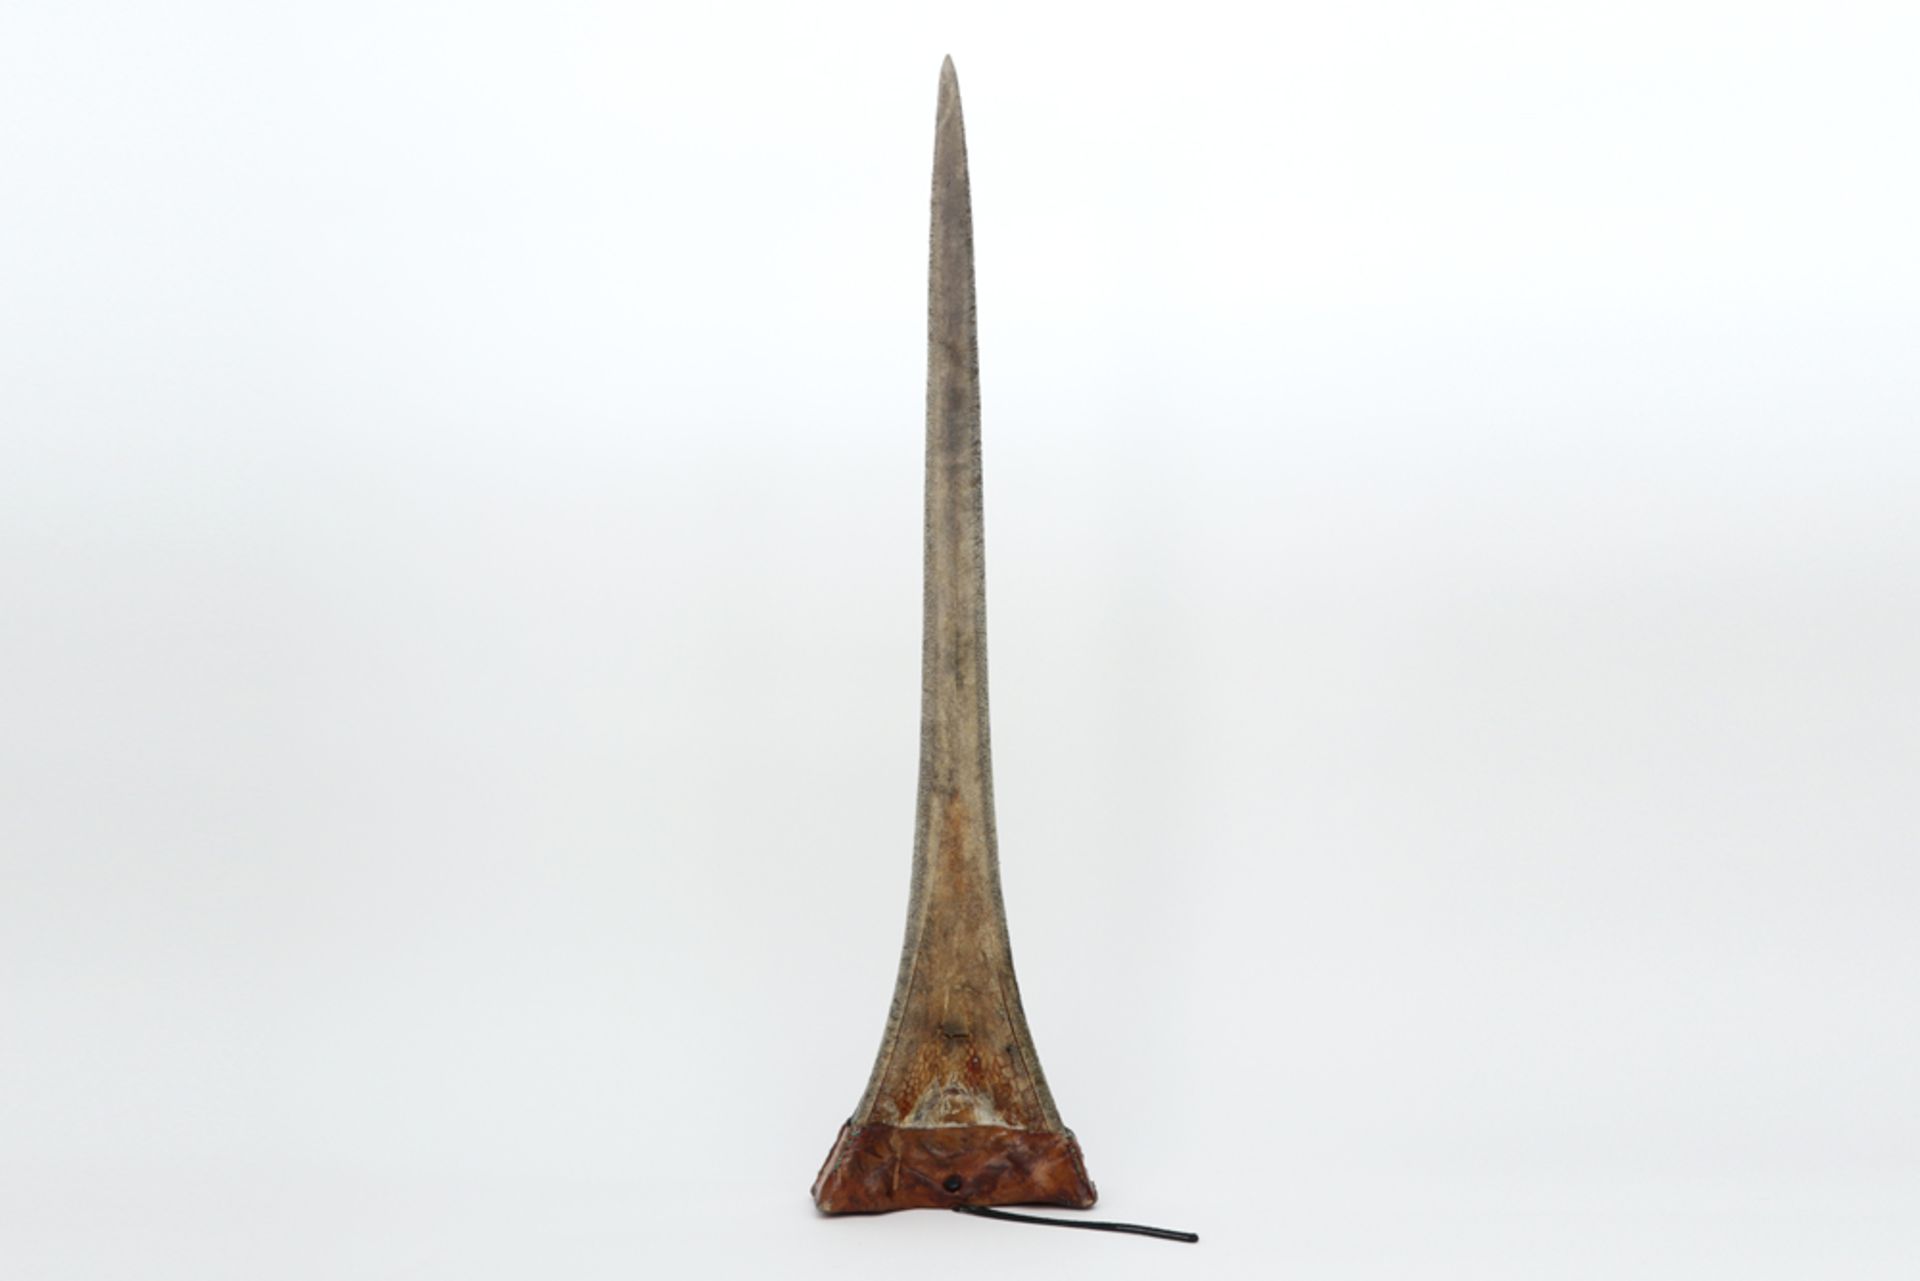 big swordfish tooth of a Xiphias Gladius || Grote zwaardvistand van een Xiphias Gladius - 78 x 20 cm - Image 2 of 2